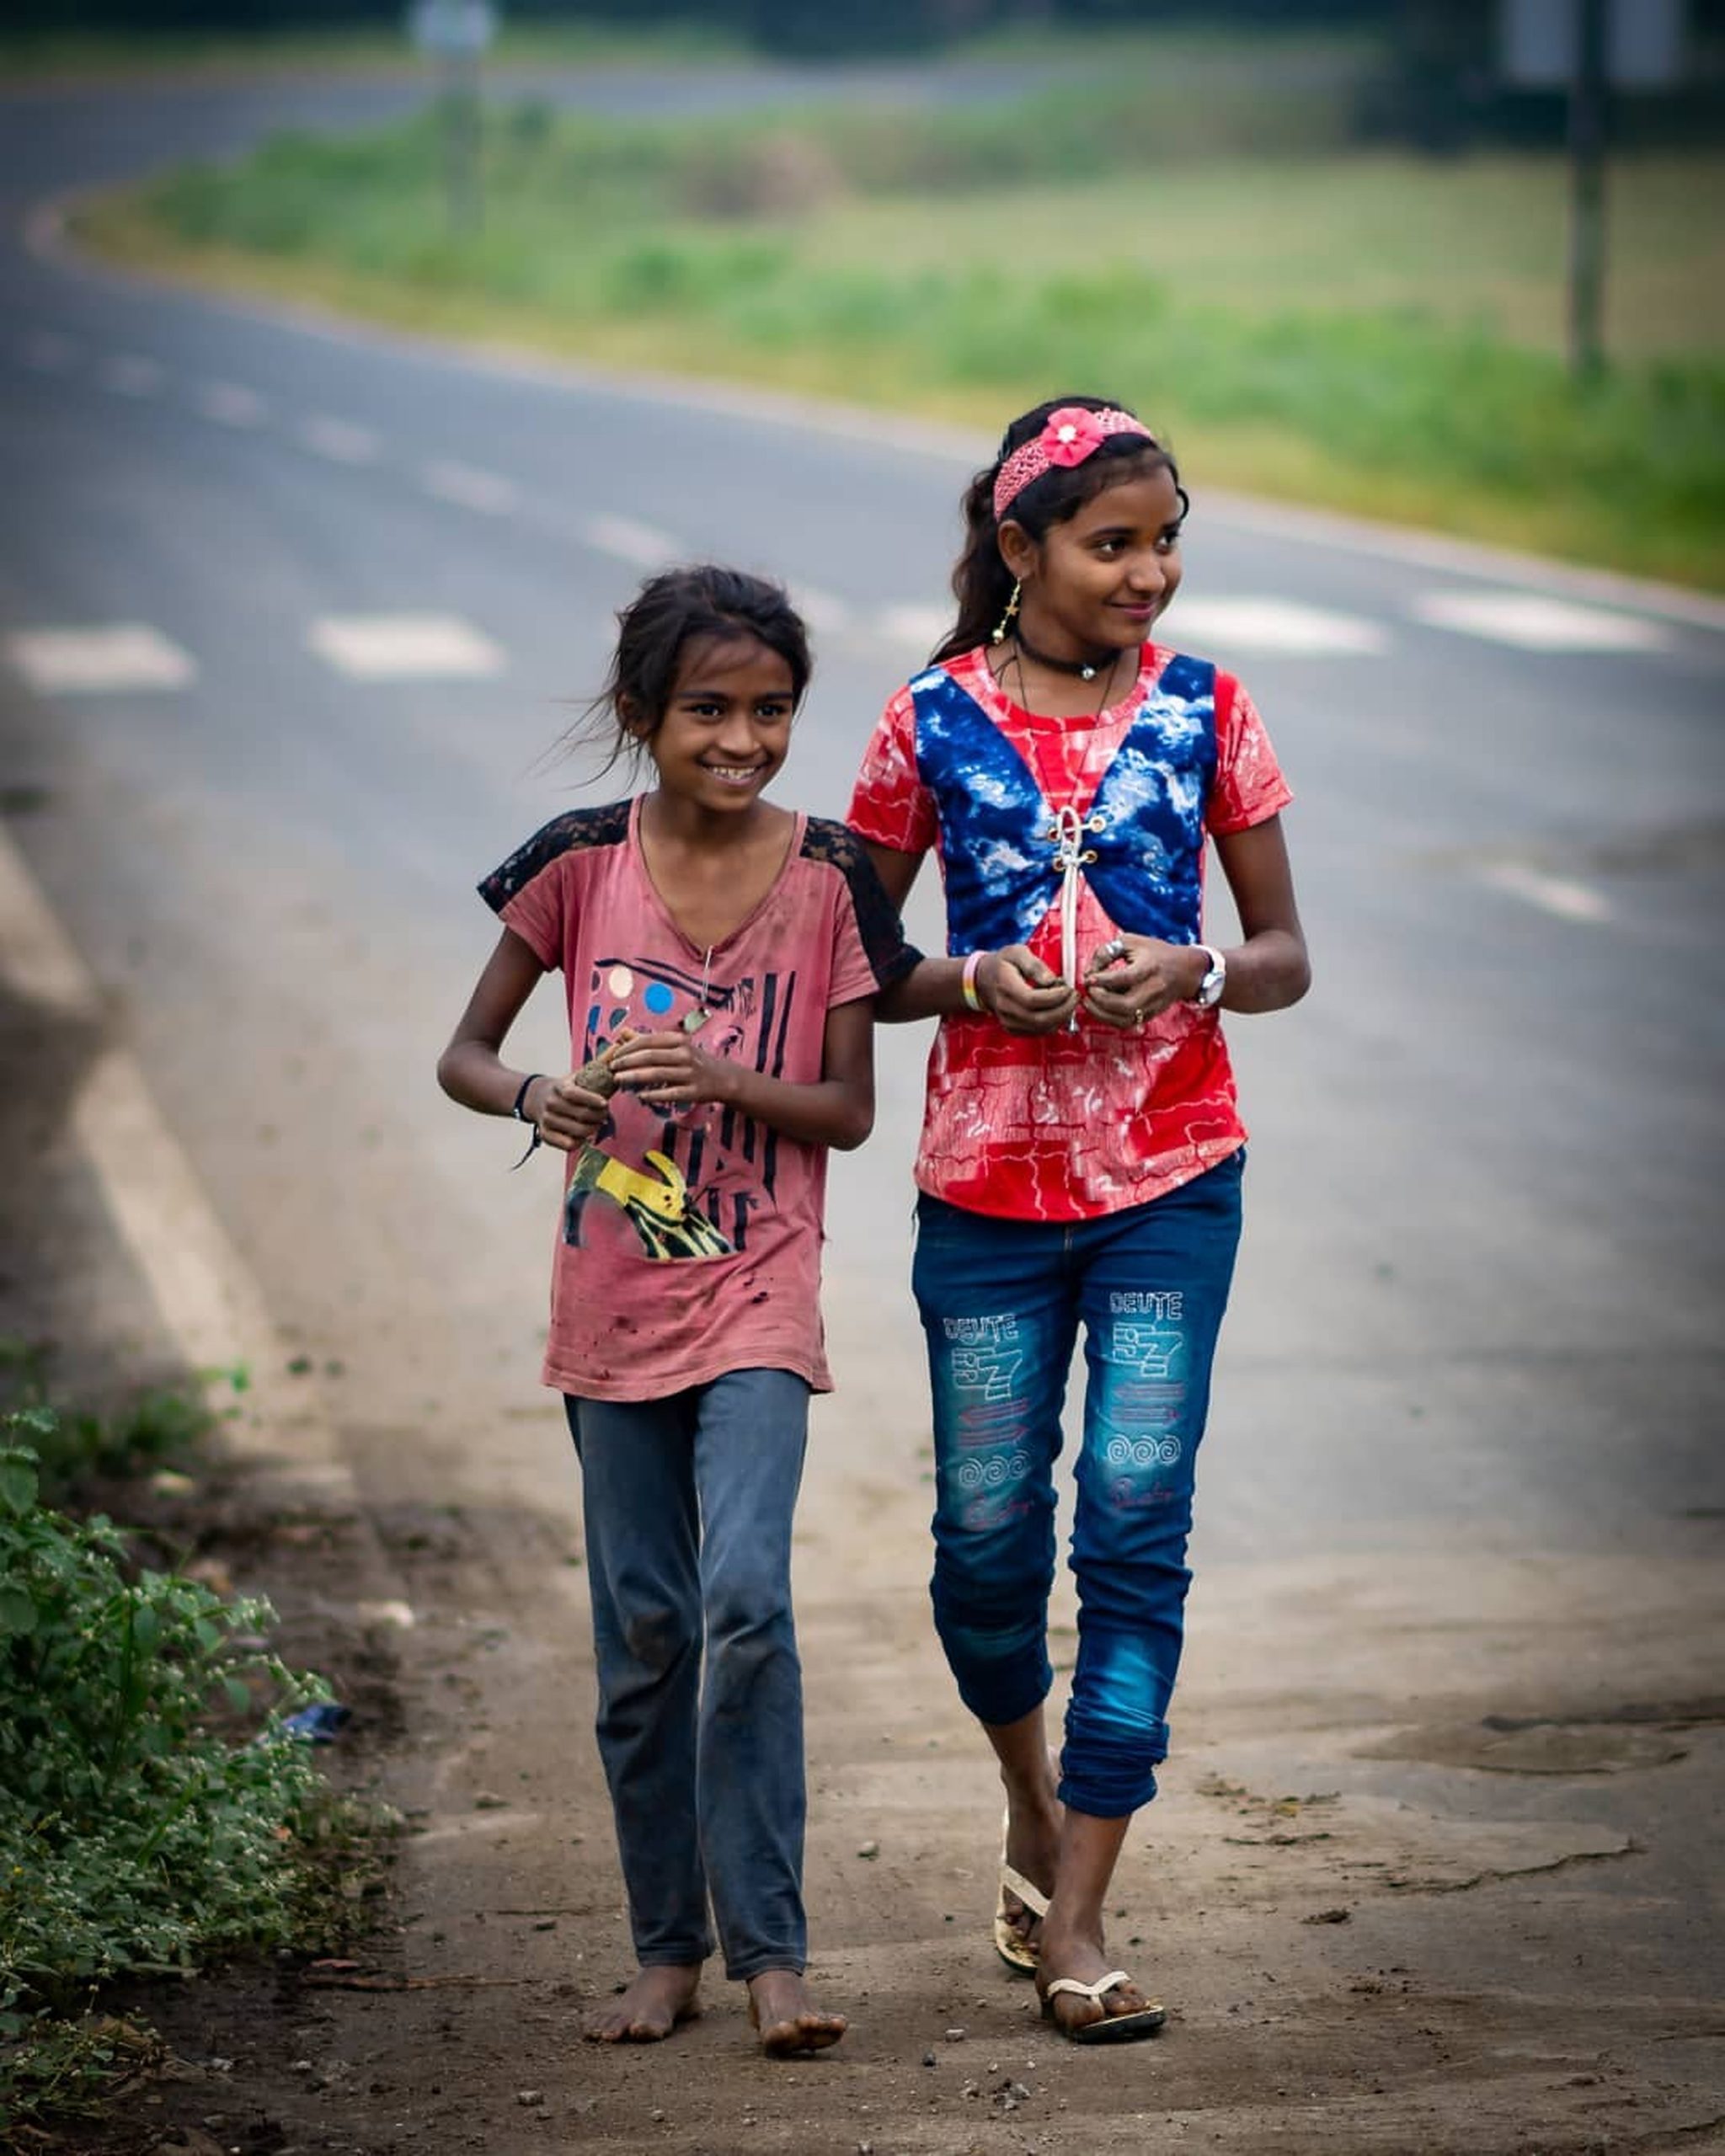 Little girls walking on a road